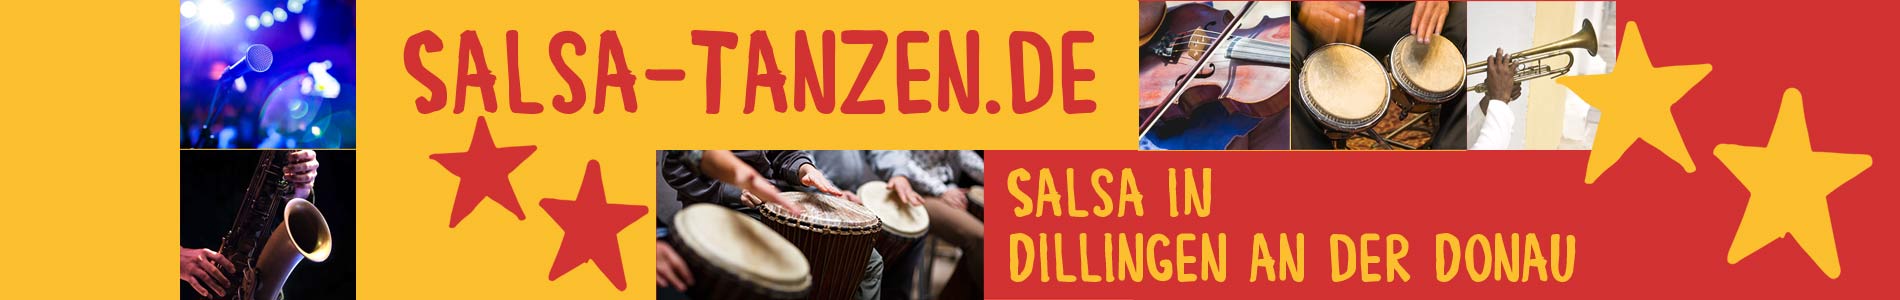 Salsa in Dillingen an der Donau – Salsa lernen und tanzen, Tanzkurse, Partys, Veranstaltungen